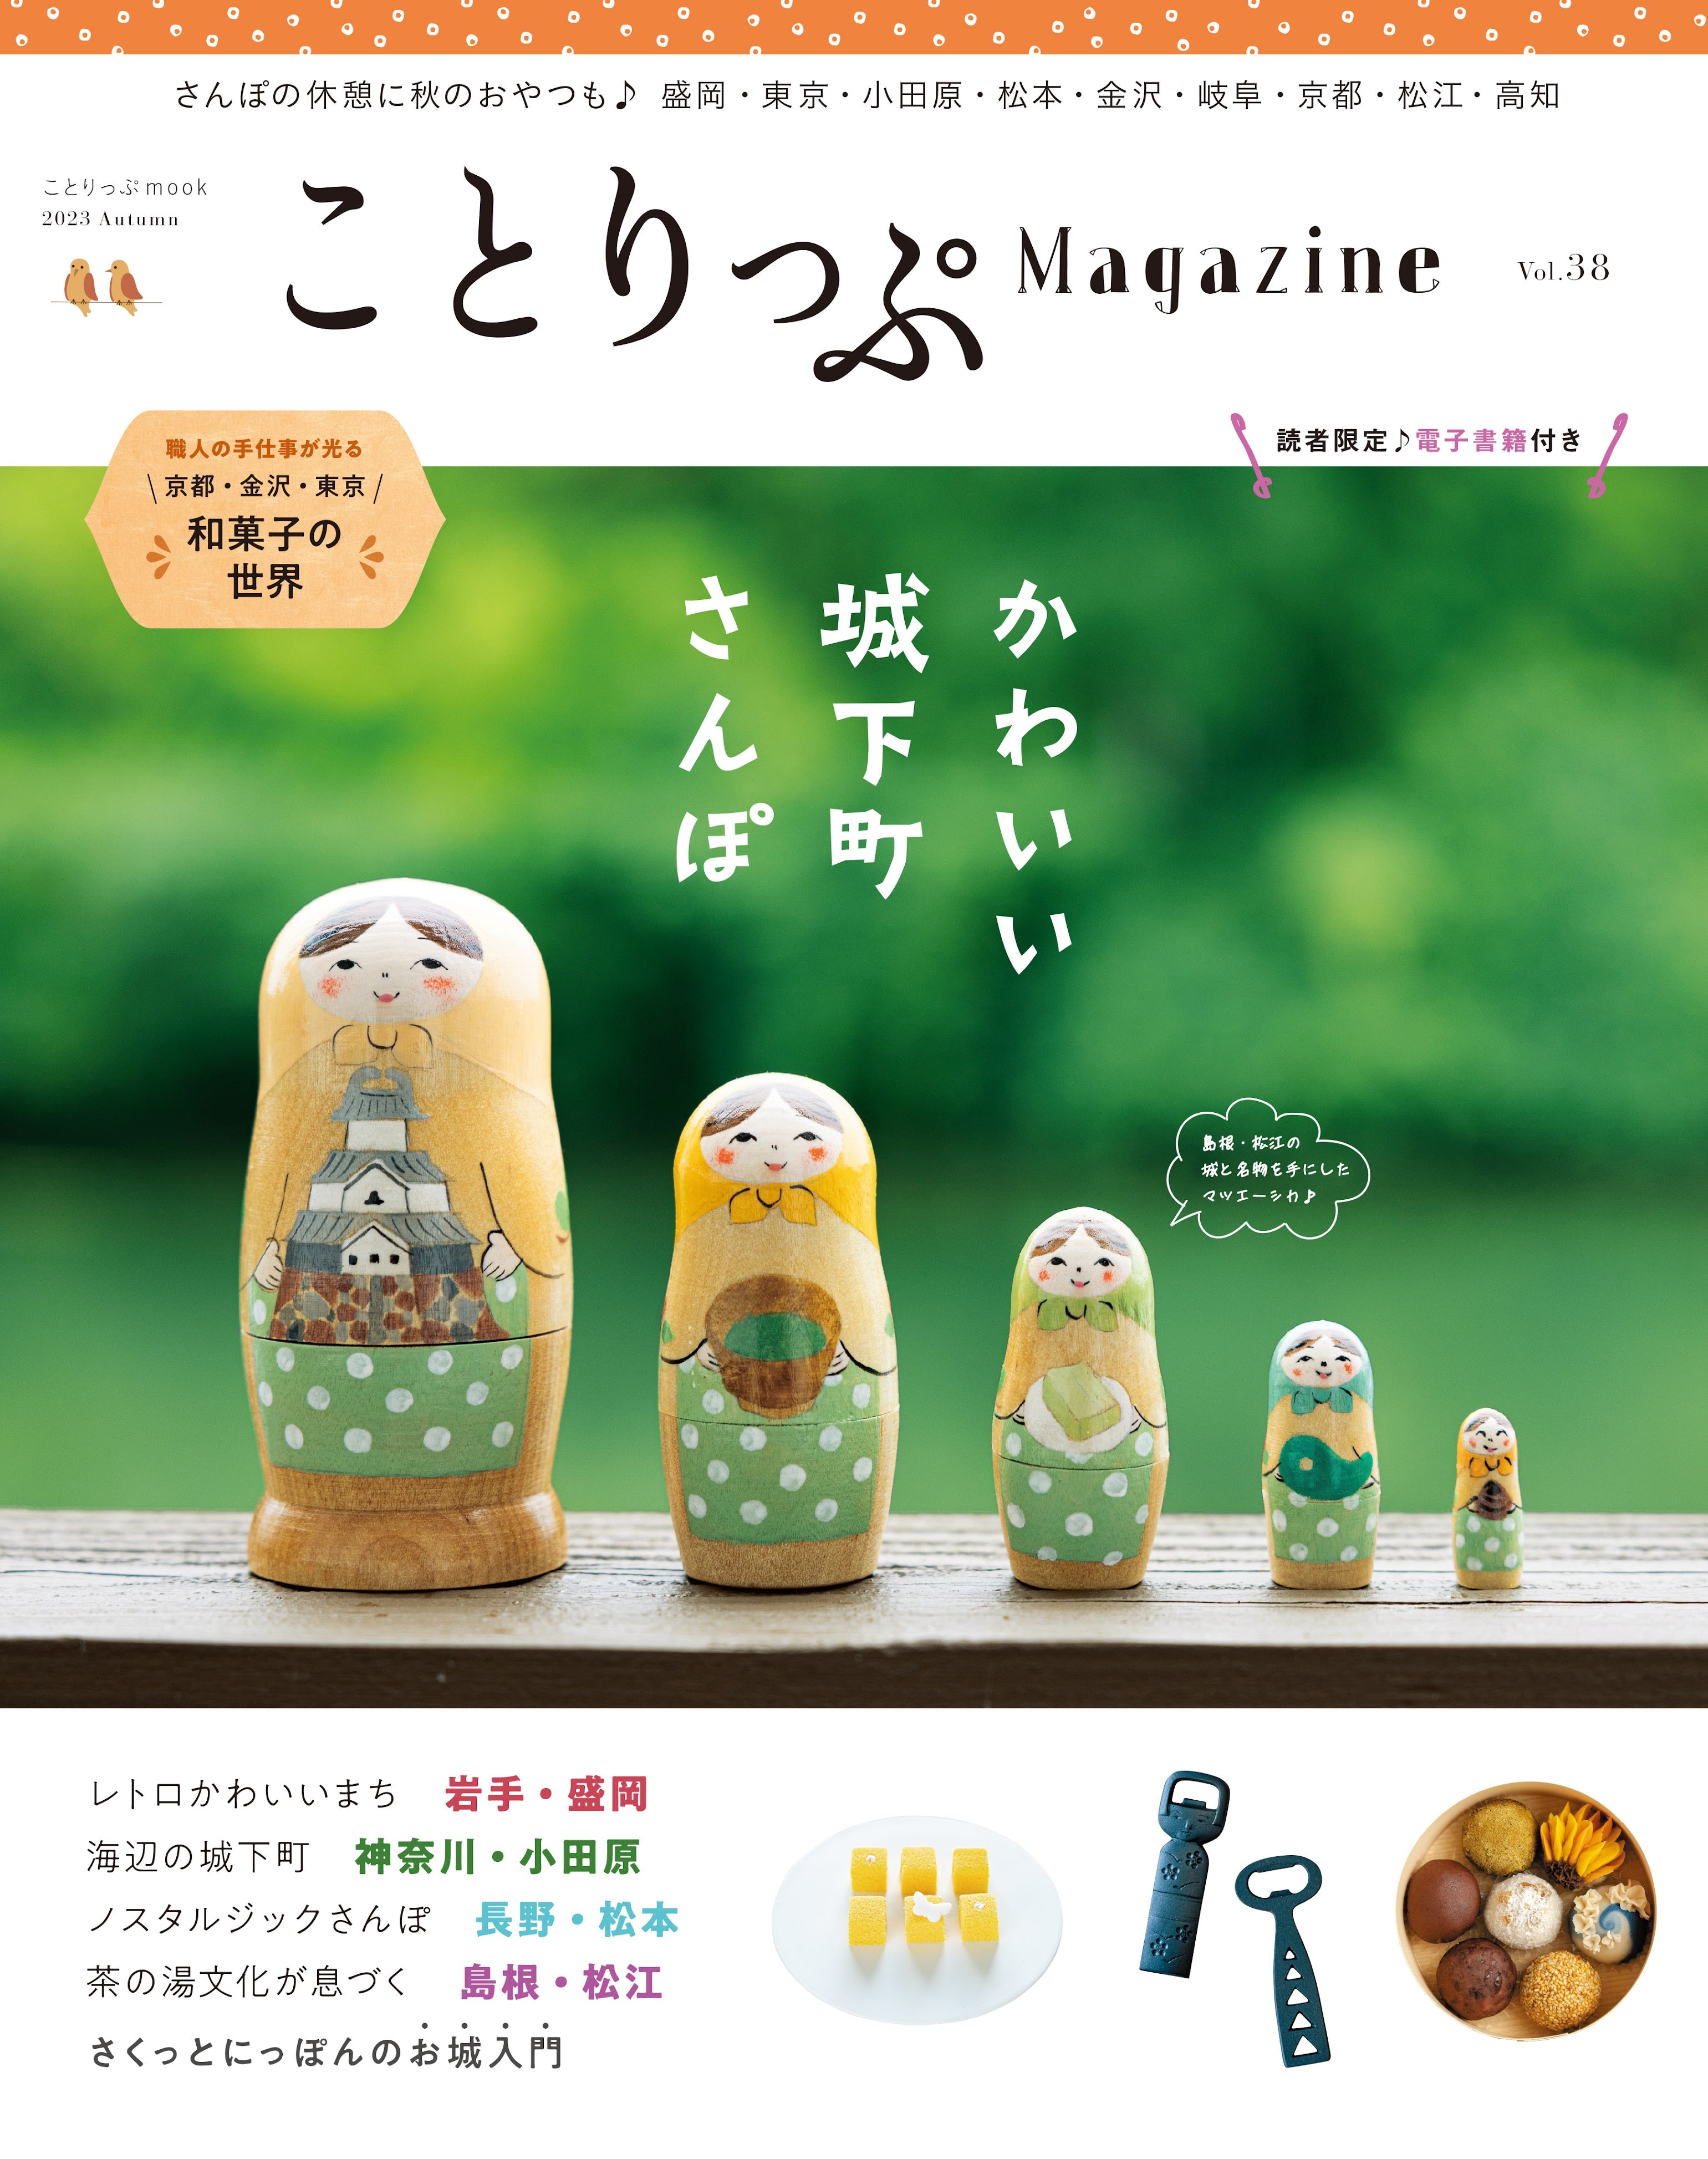 ことりっぷマガジン Vol.38 2023秋「かわいい城下町さんぽ」